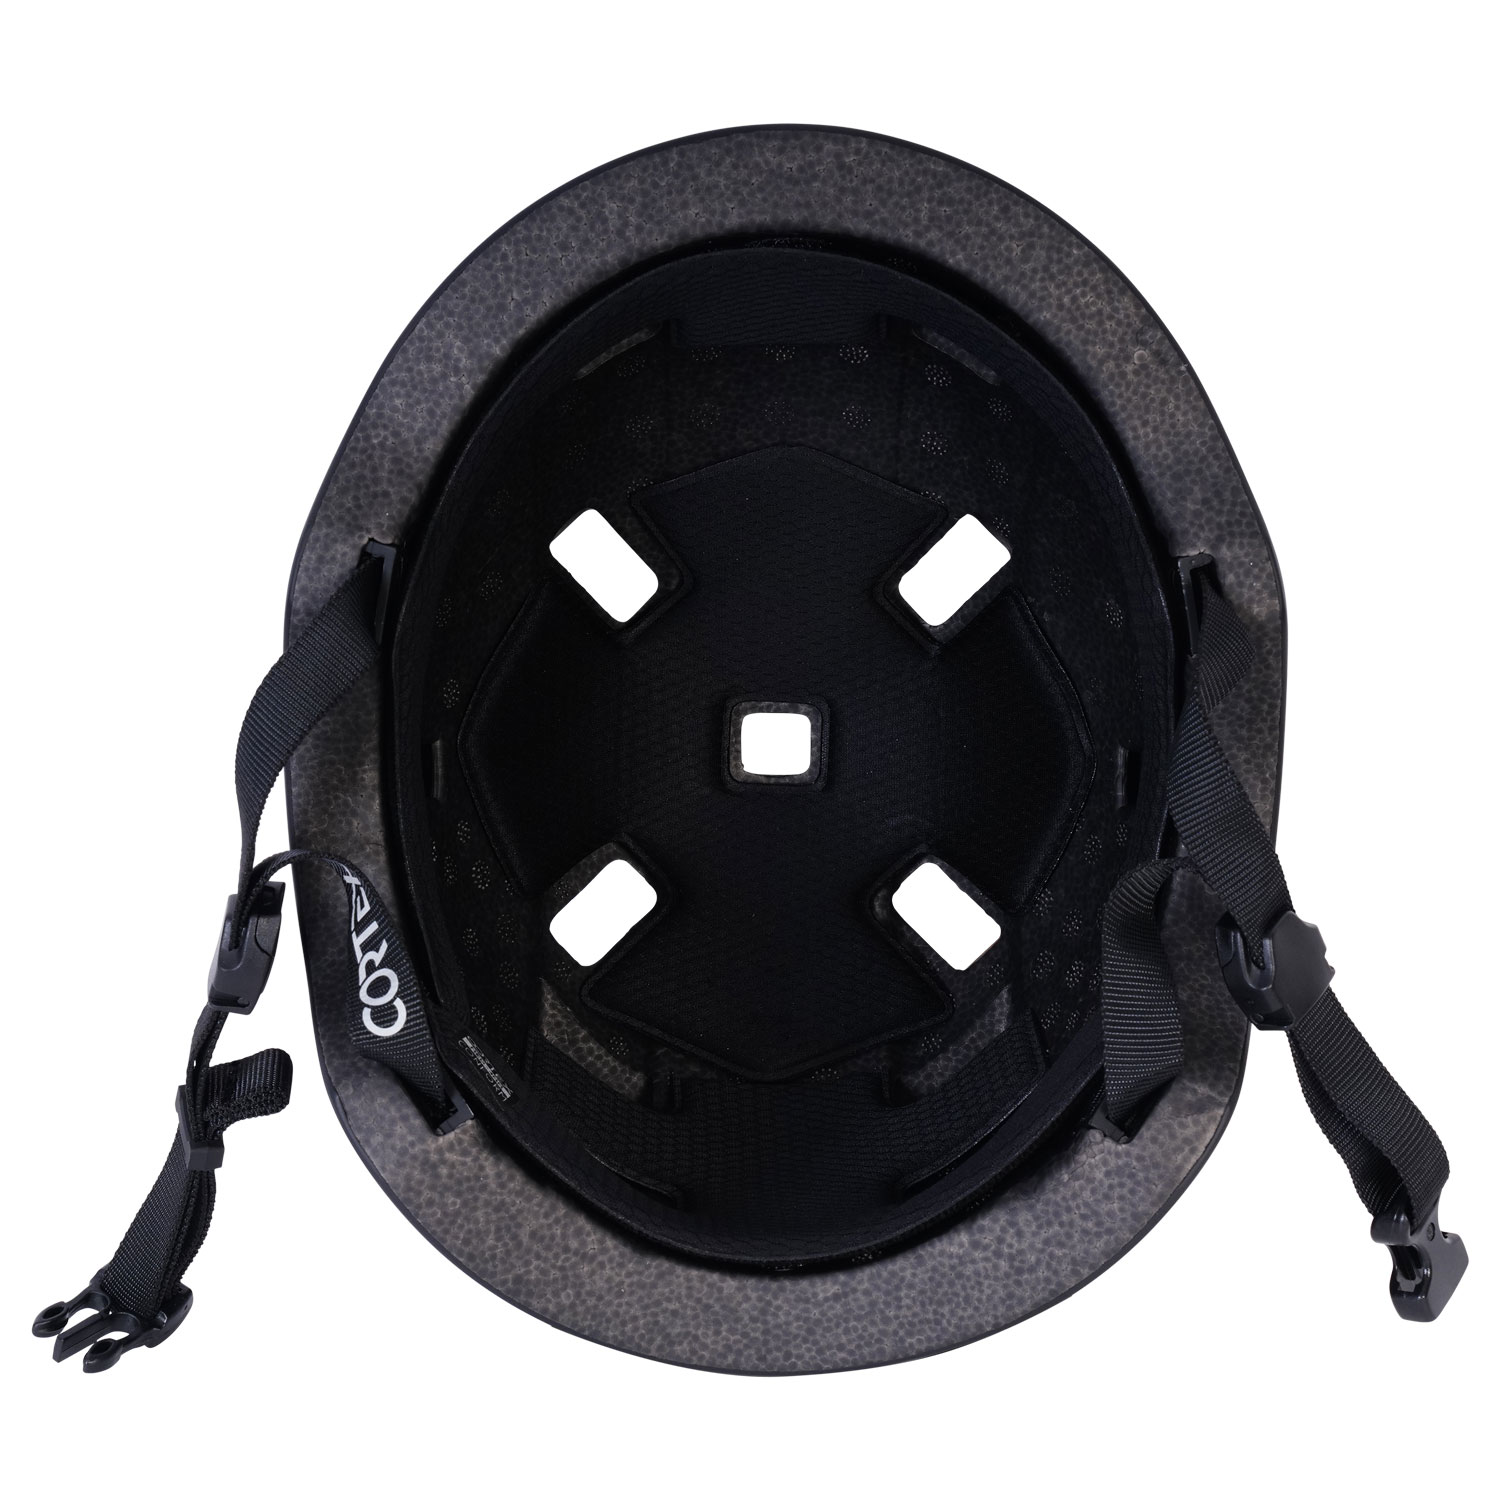 Cortex Multi Sport Helm in glanz Schwarz